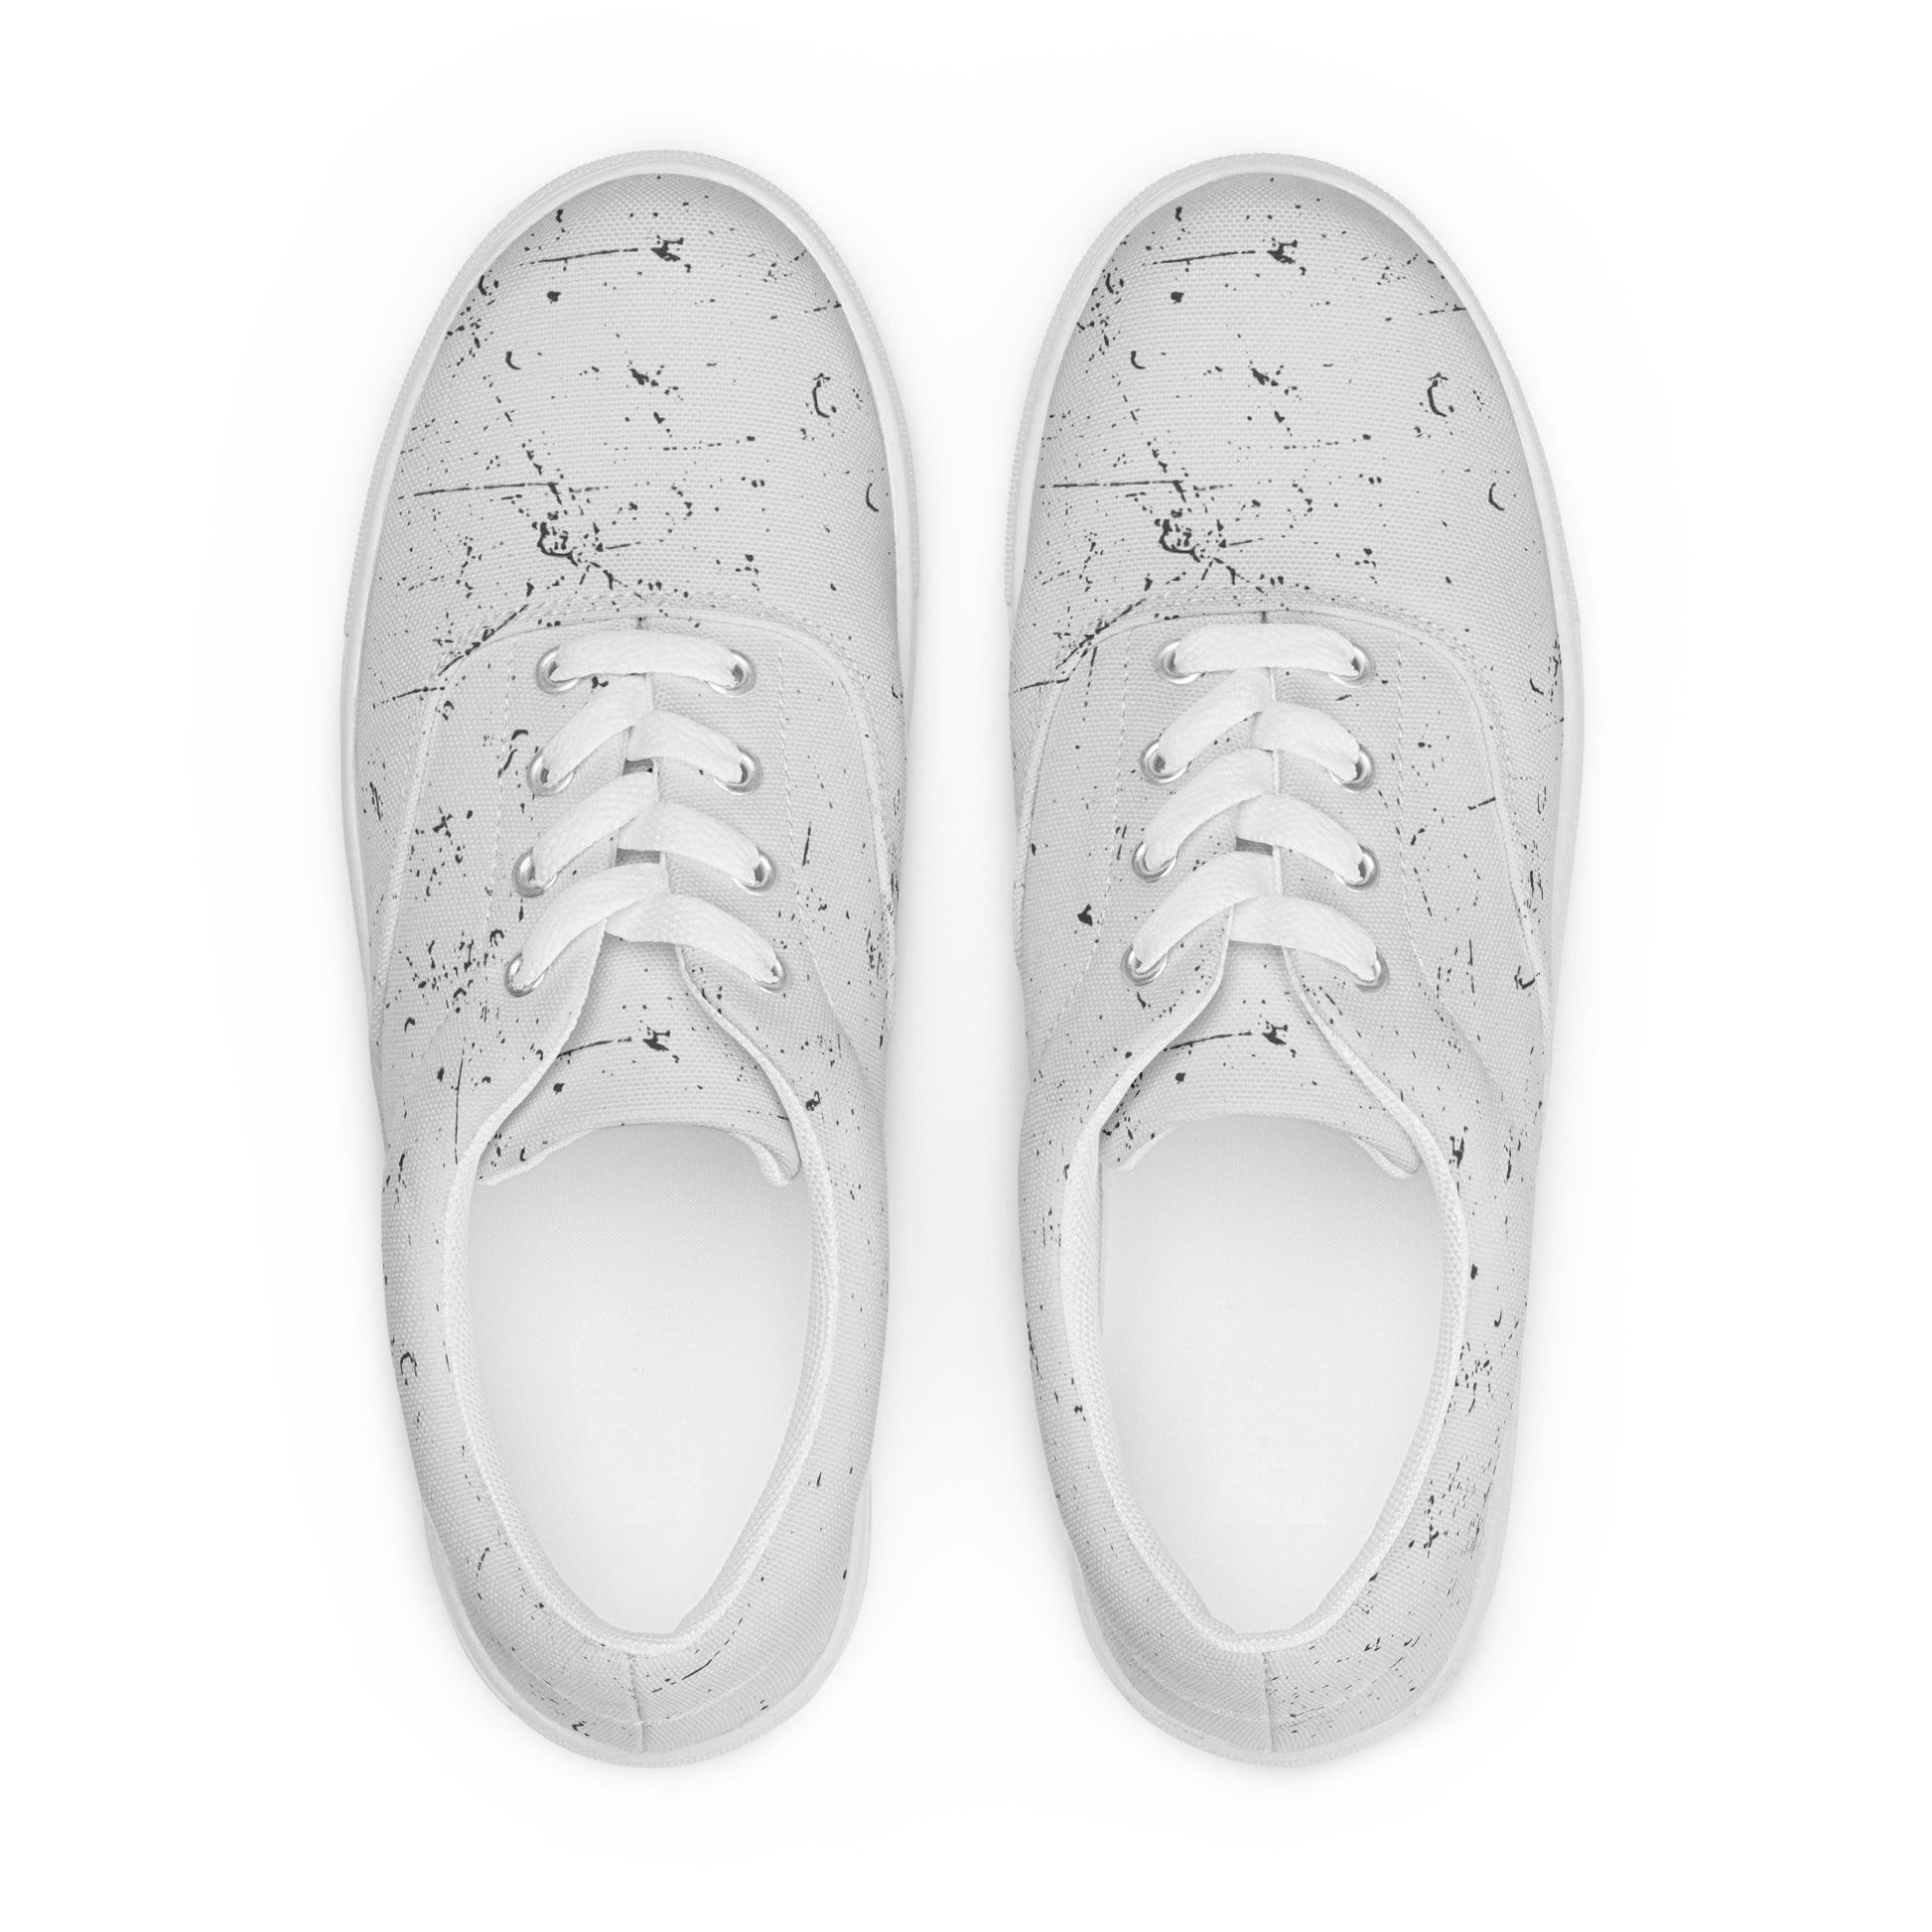 First Edition Men’s lace-up canvas shoes - Kickstart Fragrances